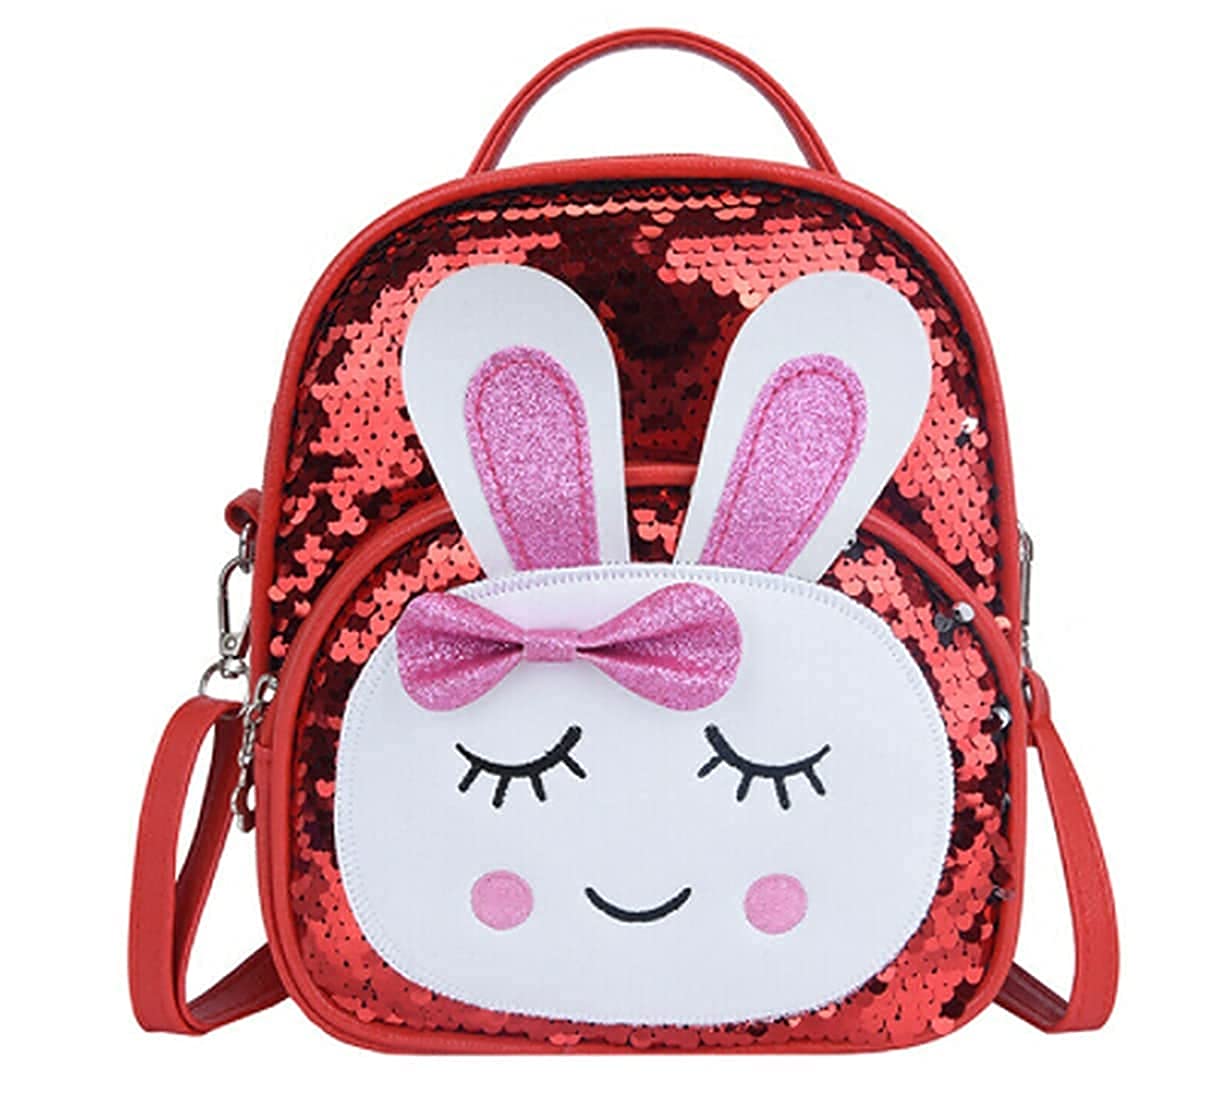 Children's Backpack | Shop Police Joyride Bags | StarAndDaisy